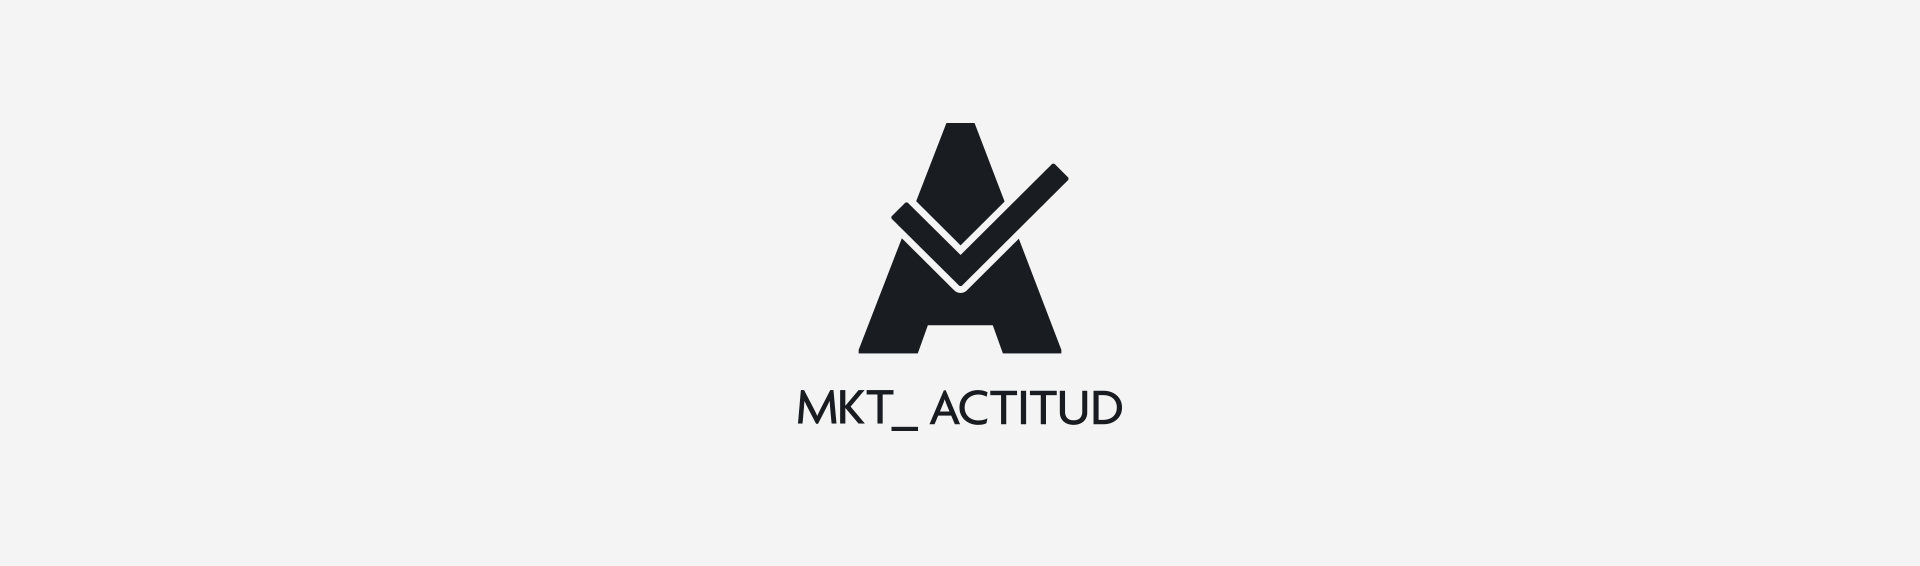 mktactitud_logotype_identity_corporate